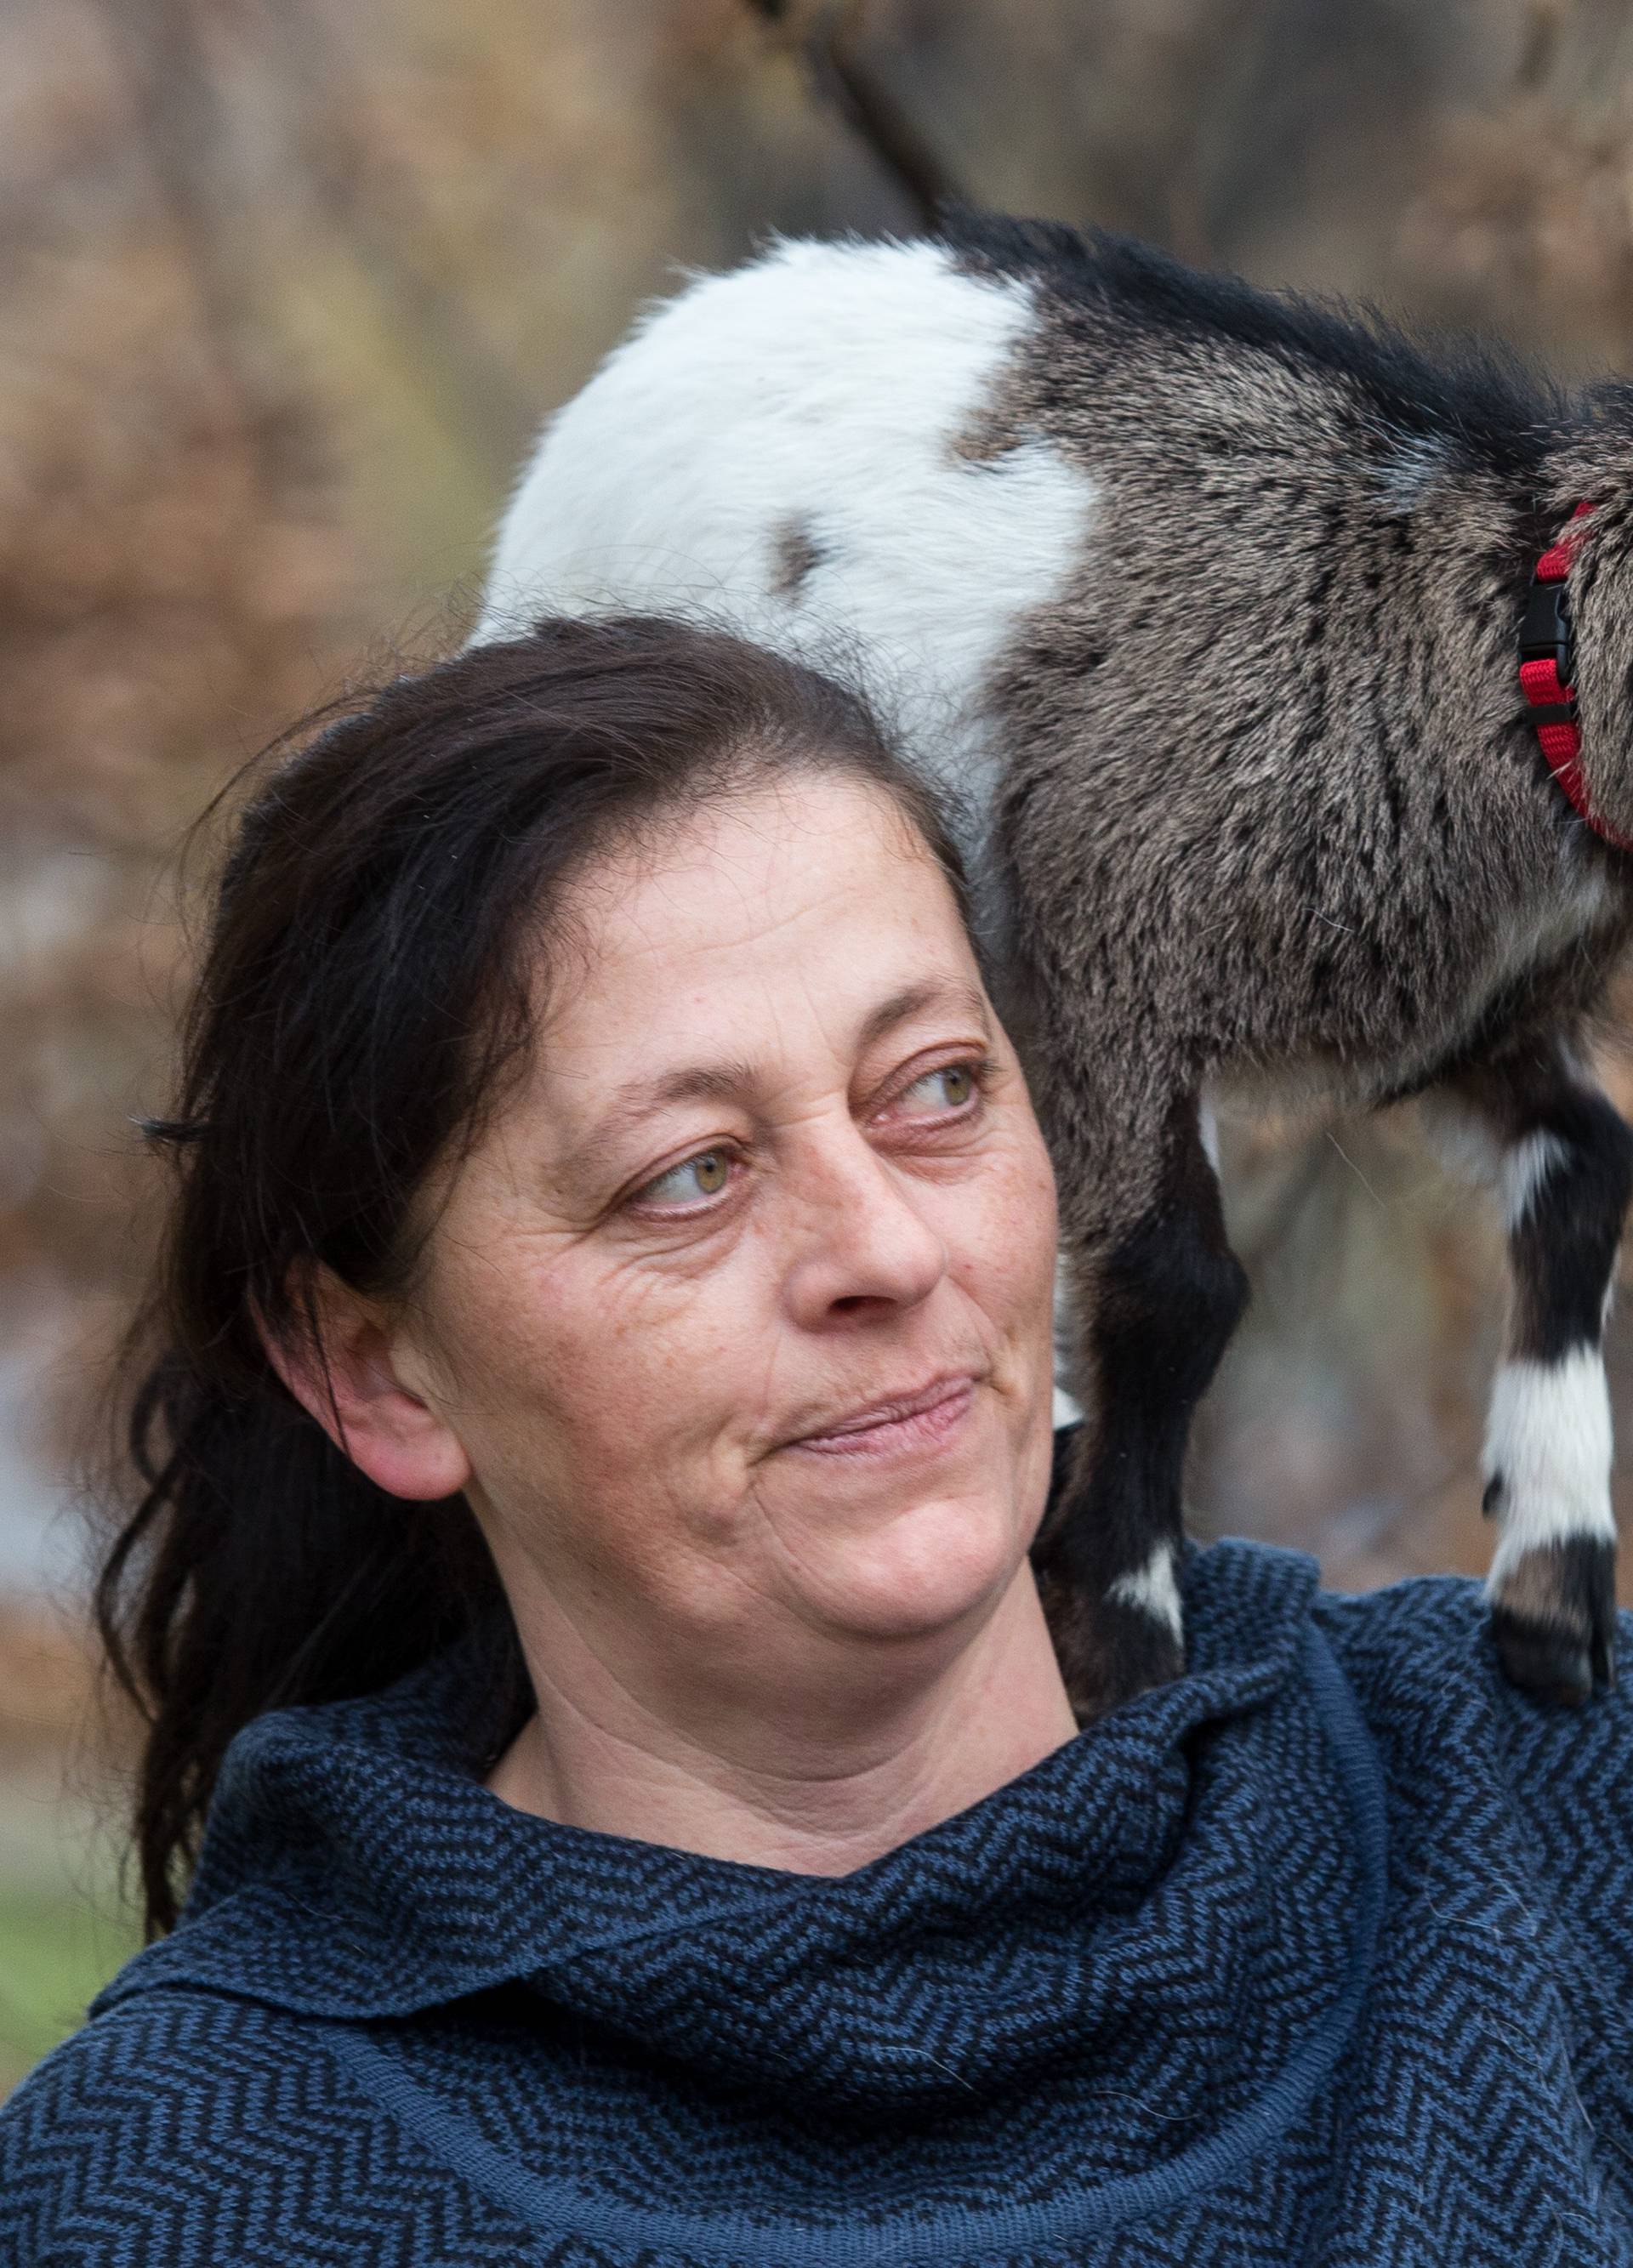 Nisu joj mogli odoljeti: Vidjeli kozu pa ju udomili u Zagrebu